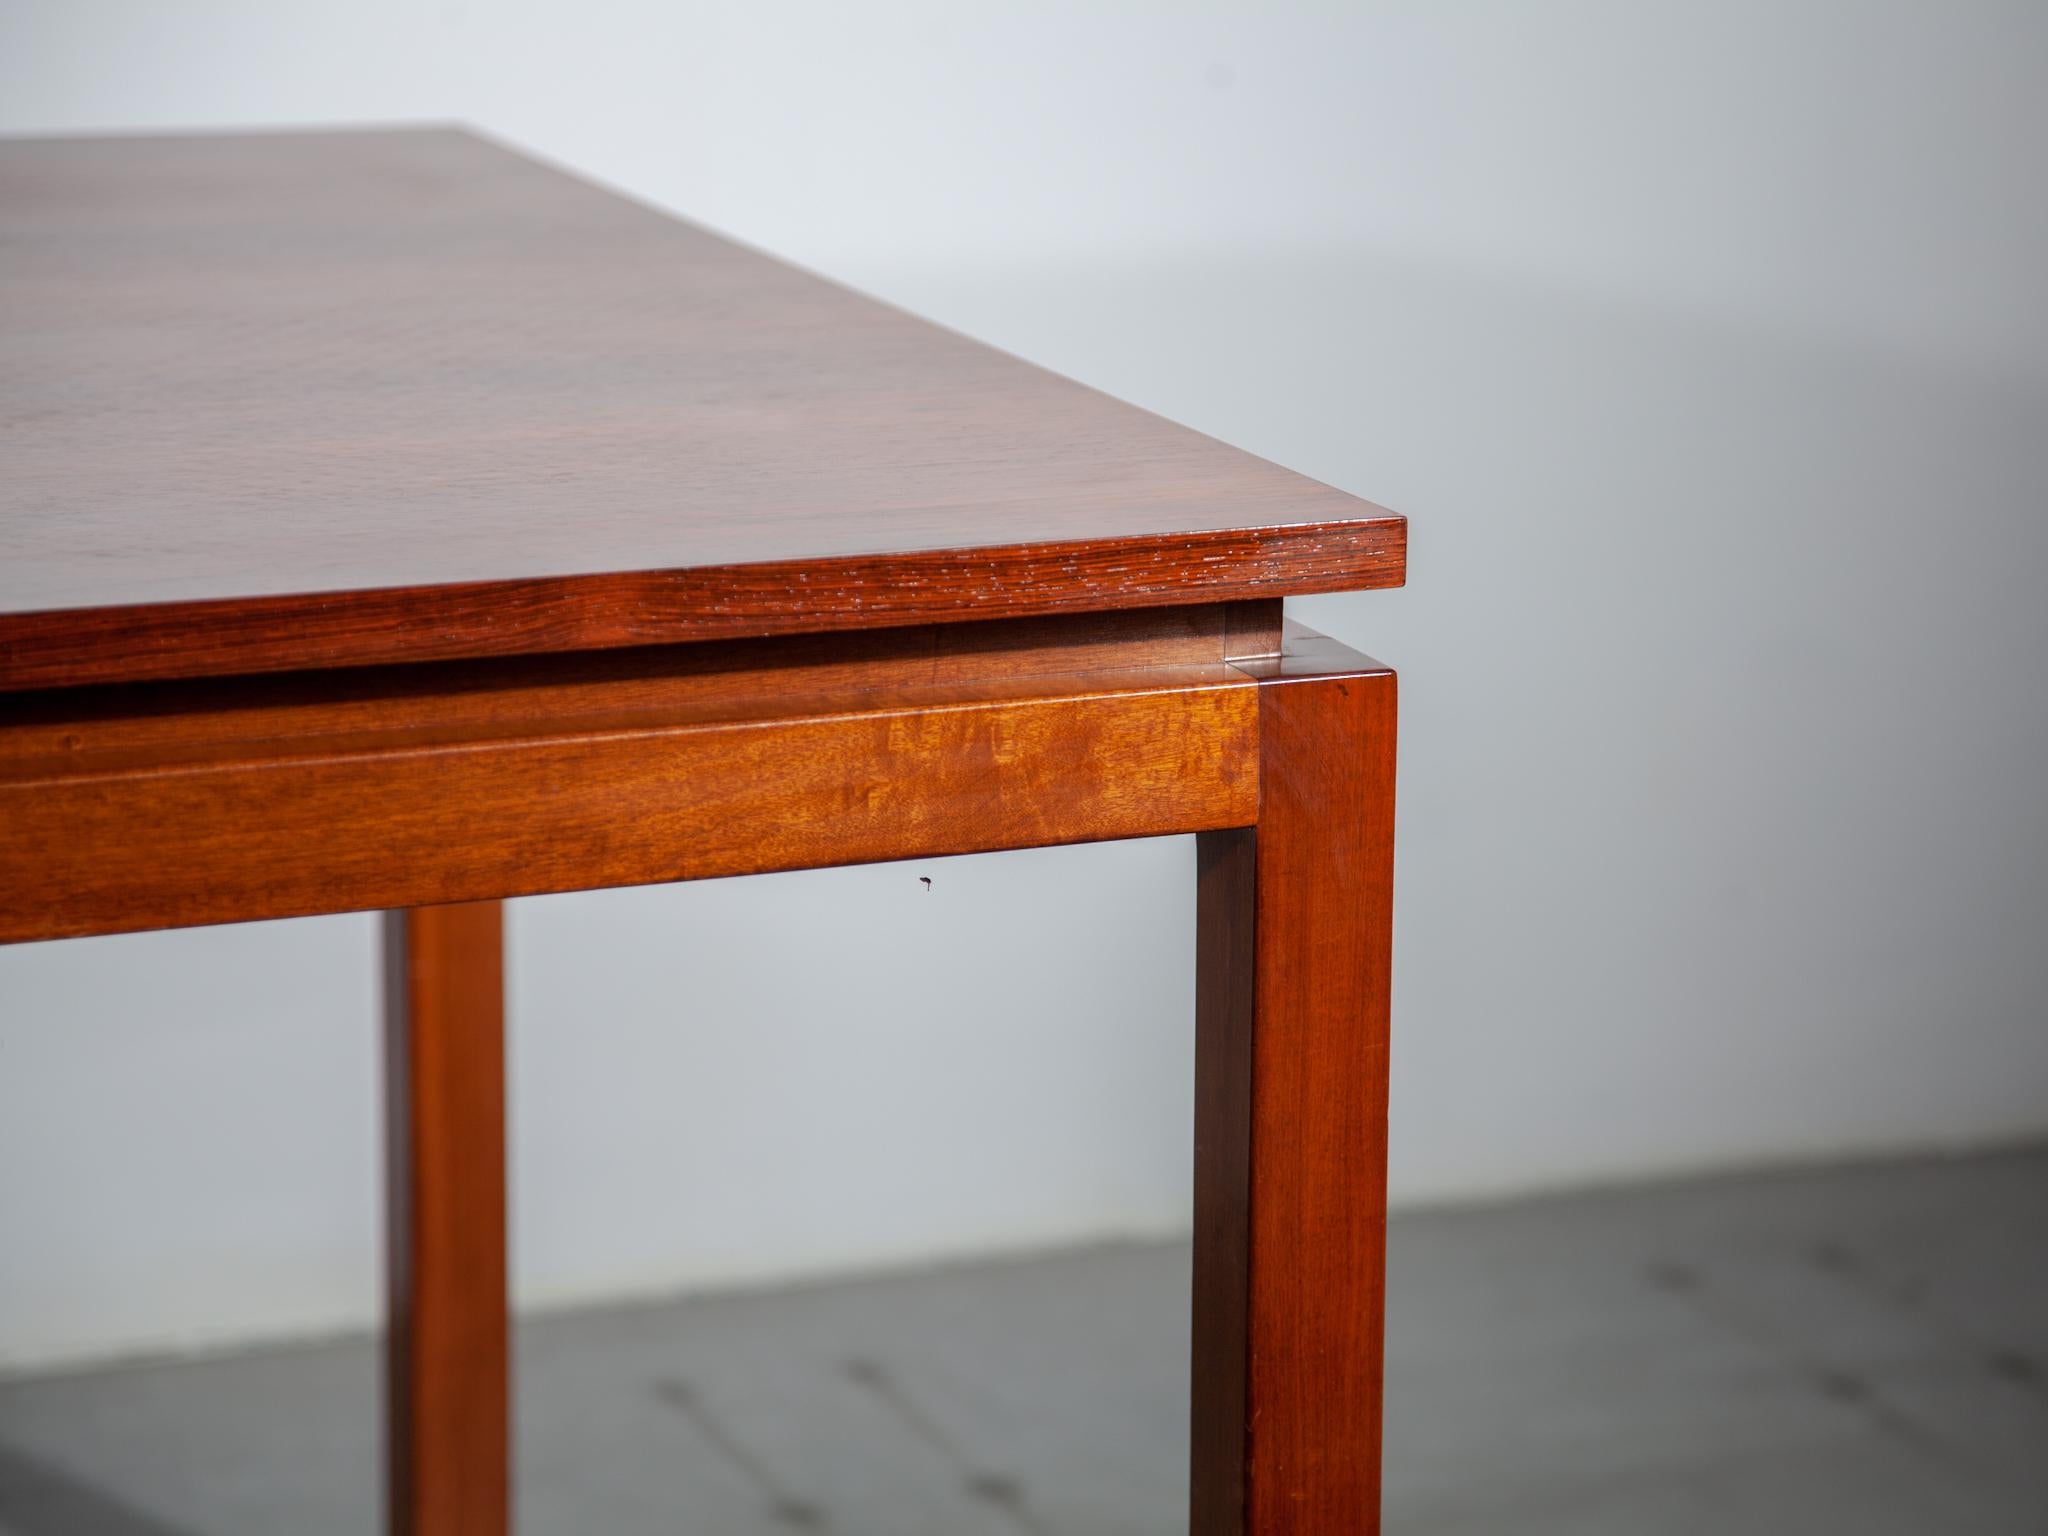 Table de salle à manger extensible minimaliste conçue par Alfred Hendrickx pour Belform. Une belle table minimaliste avec plateau flottant dans un beau grain de bois et en parfait état. La table est extensible au milieu pour atteindre une longueur